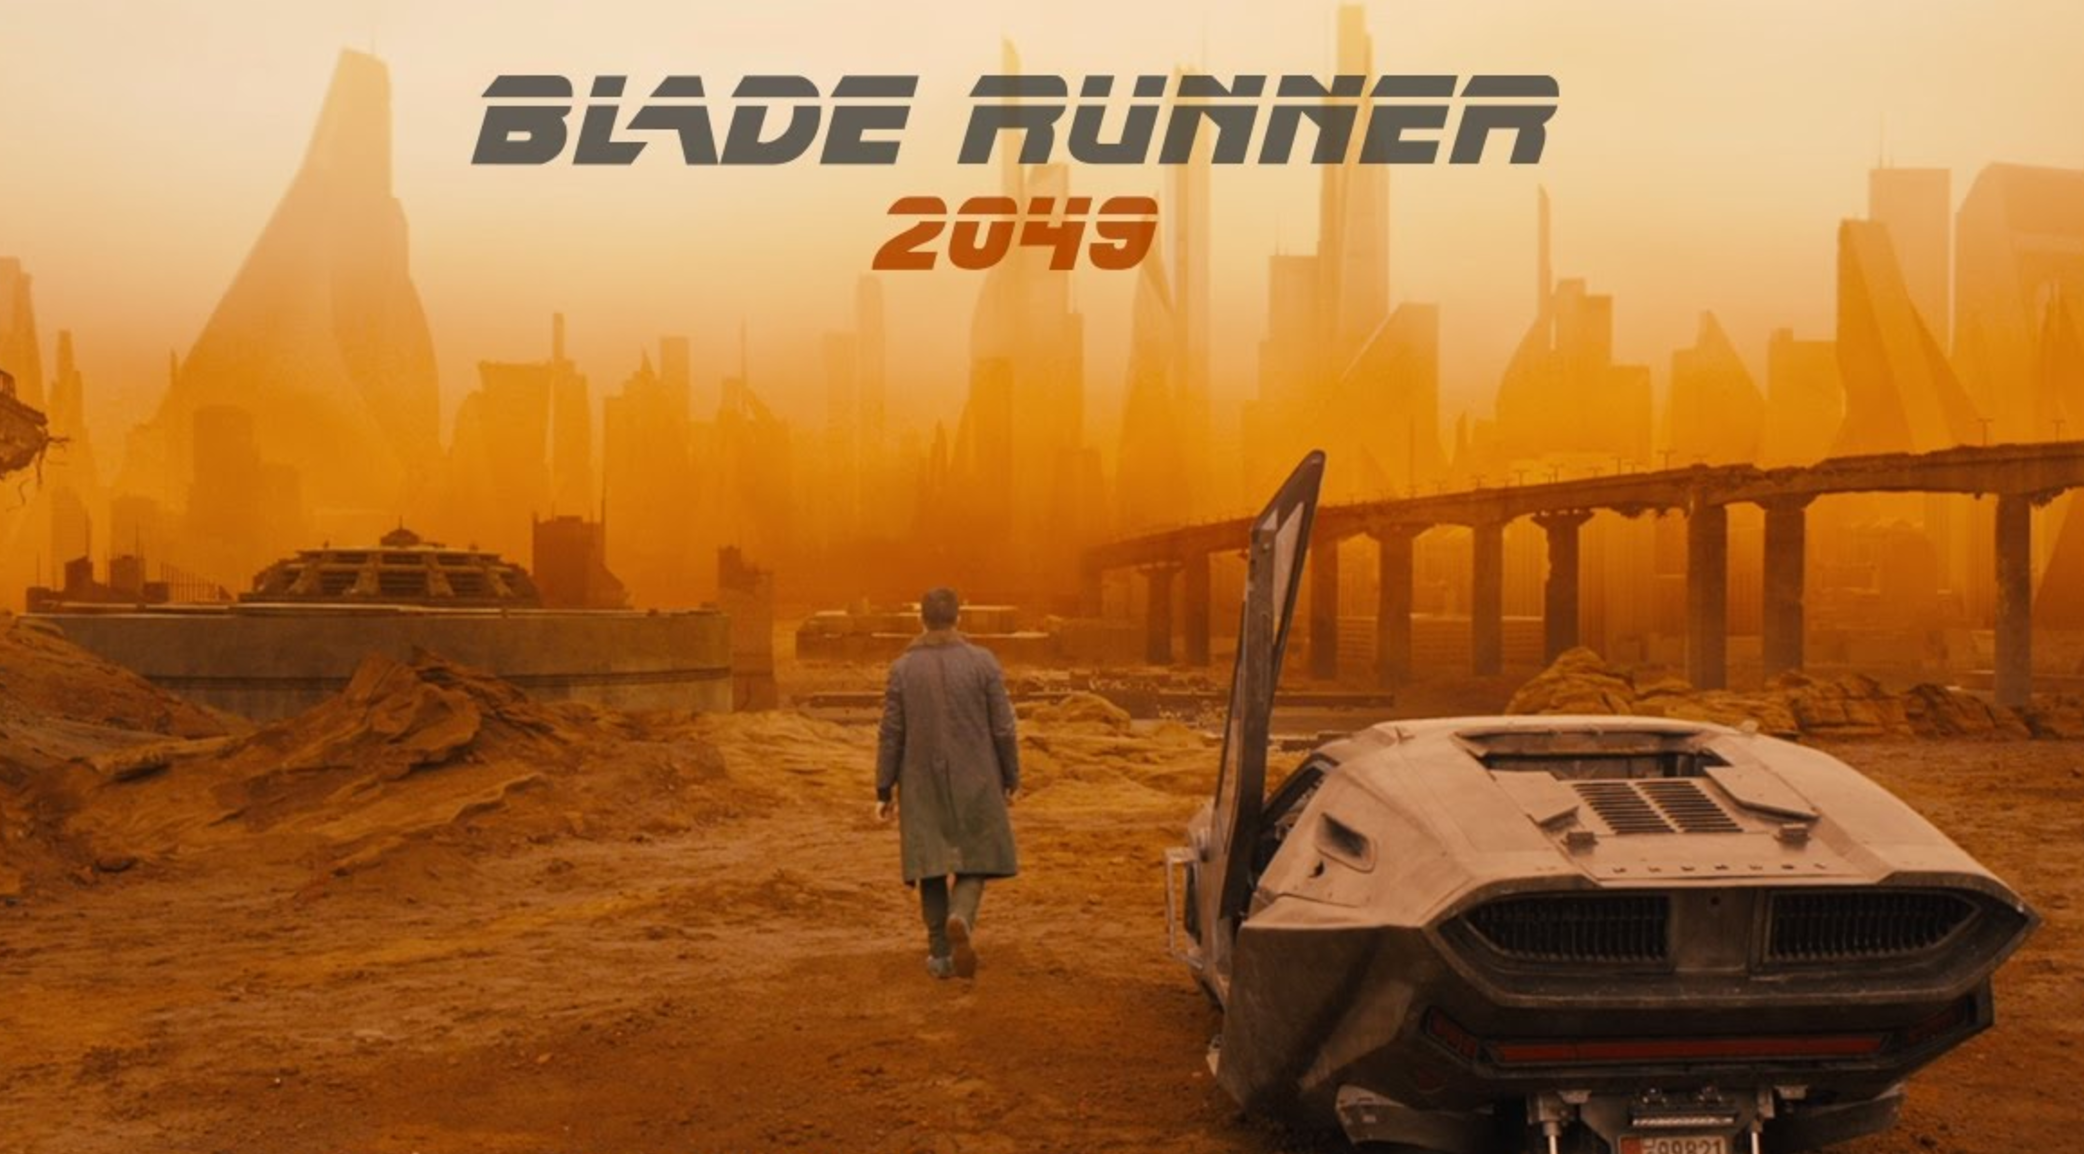 blade-runner-2049-car